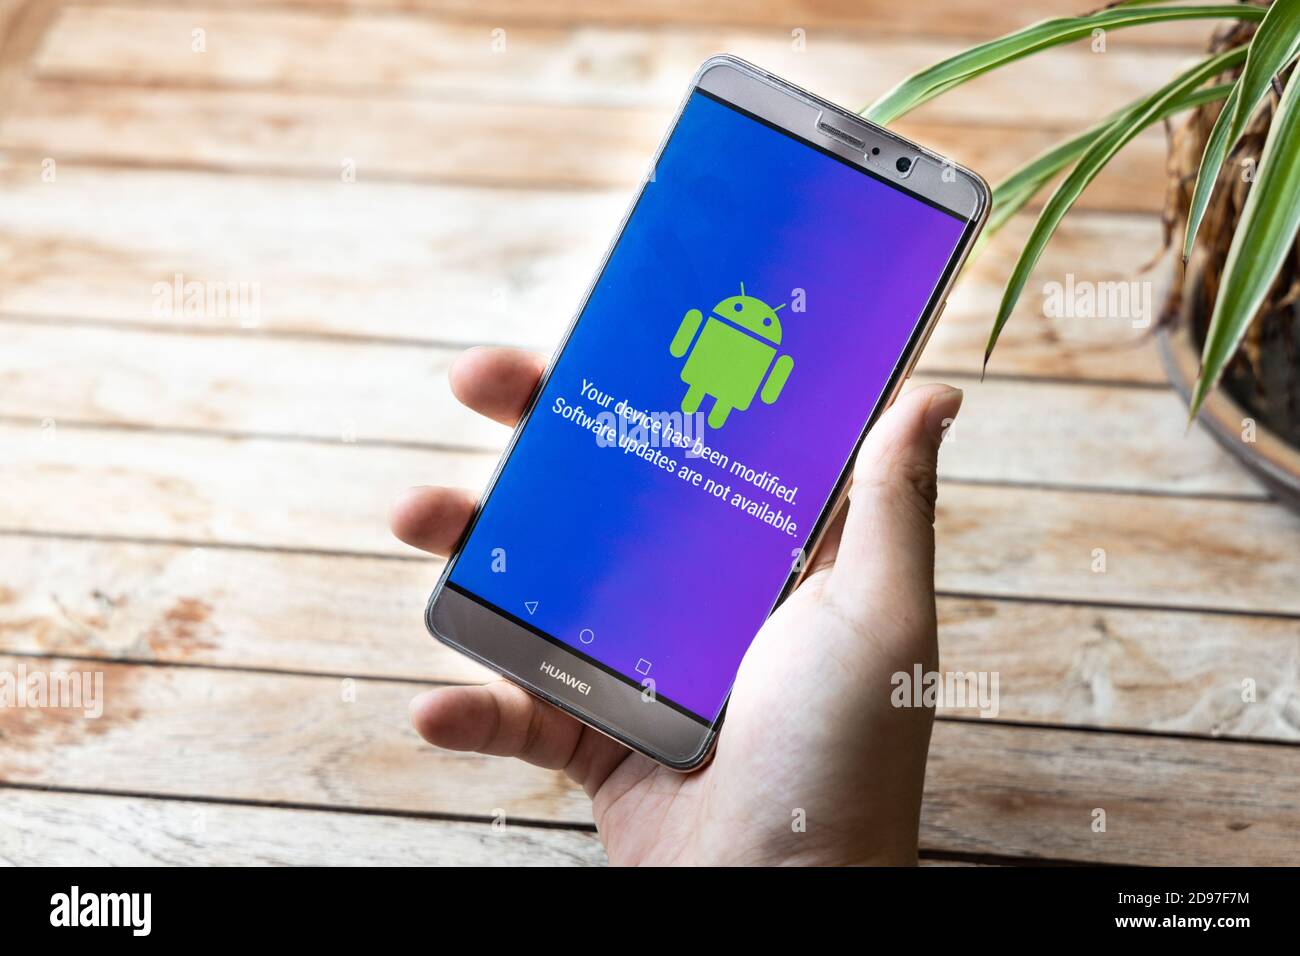 Personne détenant un téléphone Huawei Mate avec message Android les mises à jour logicielles ne sont pas disponibles. Les entreprises américaines ont commencé à réduire leurs ventes à la société chinoise de télécommunications Huawei Banque D'Images